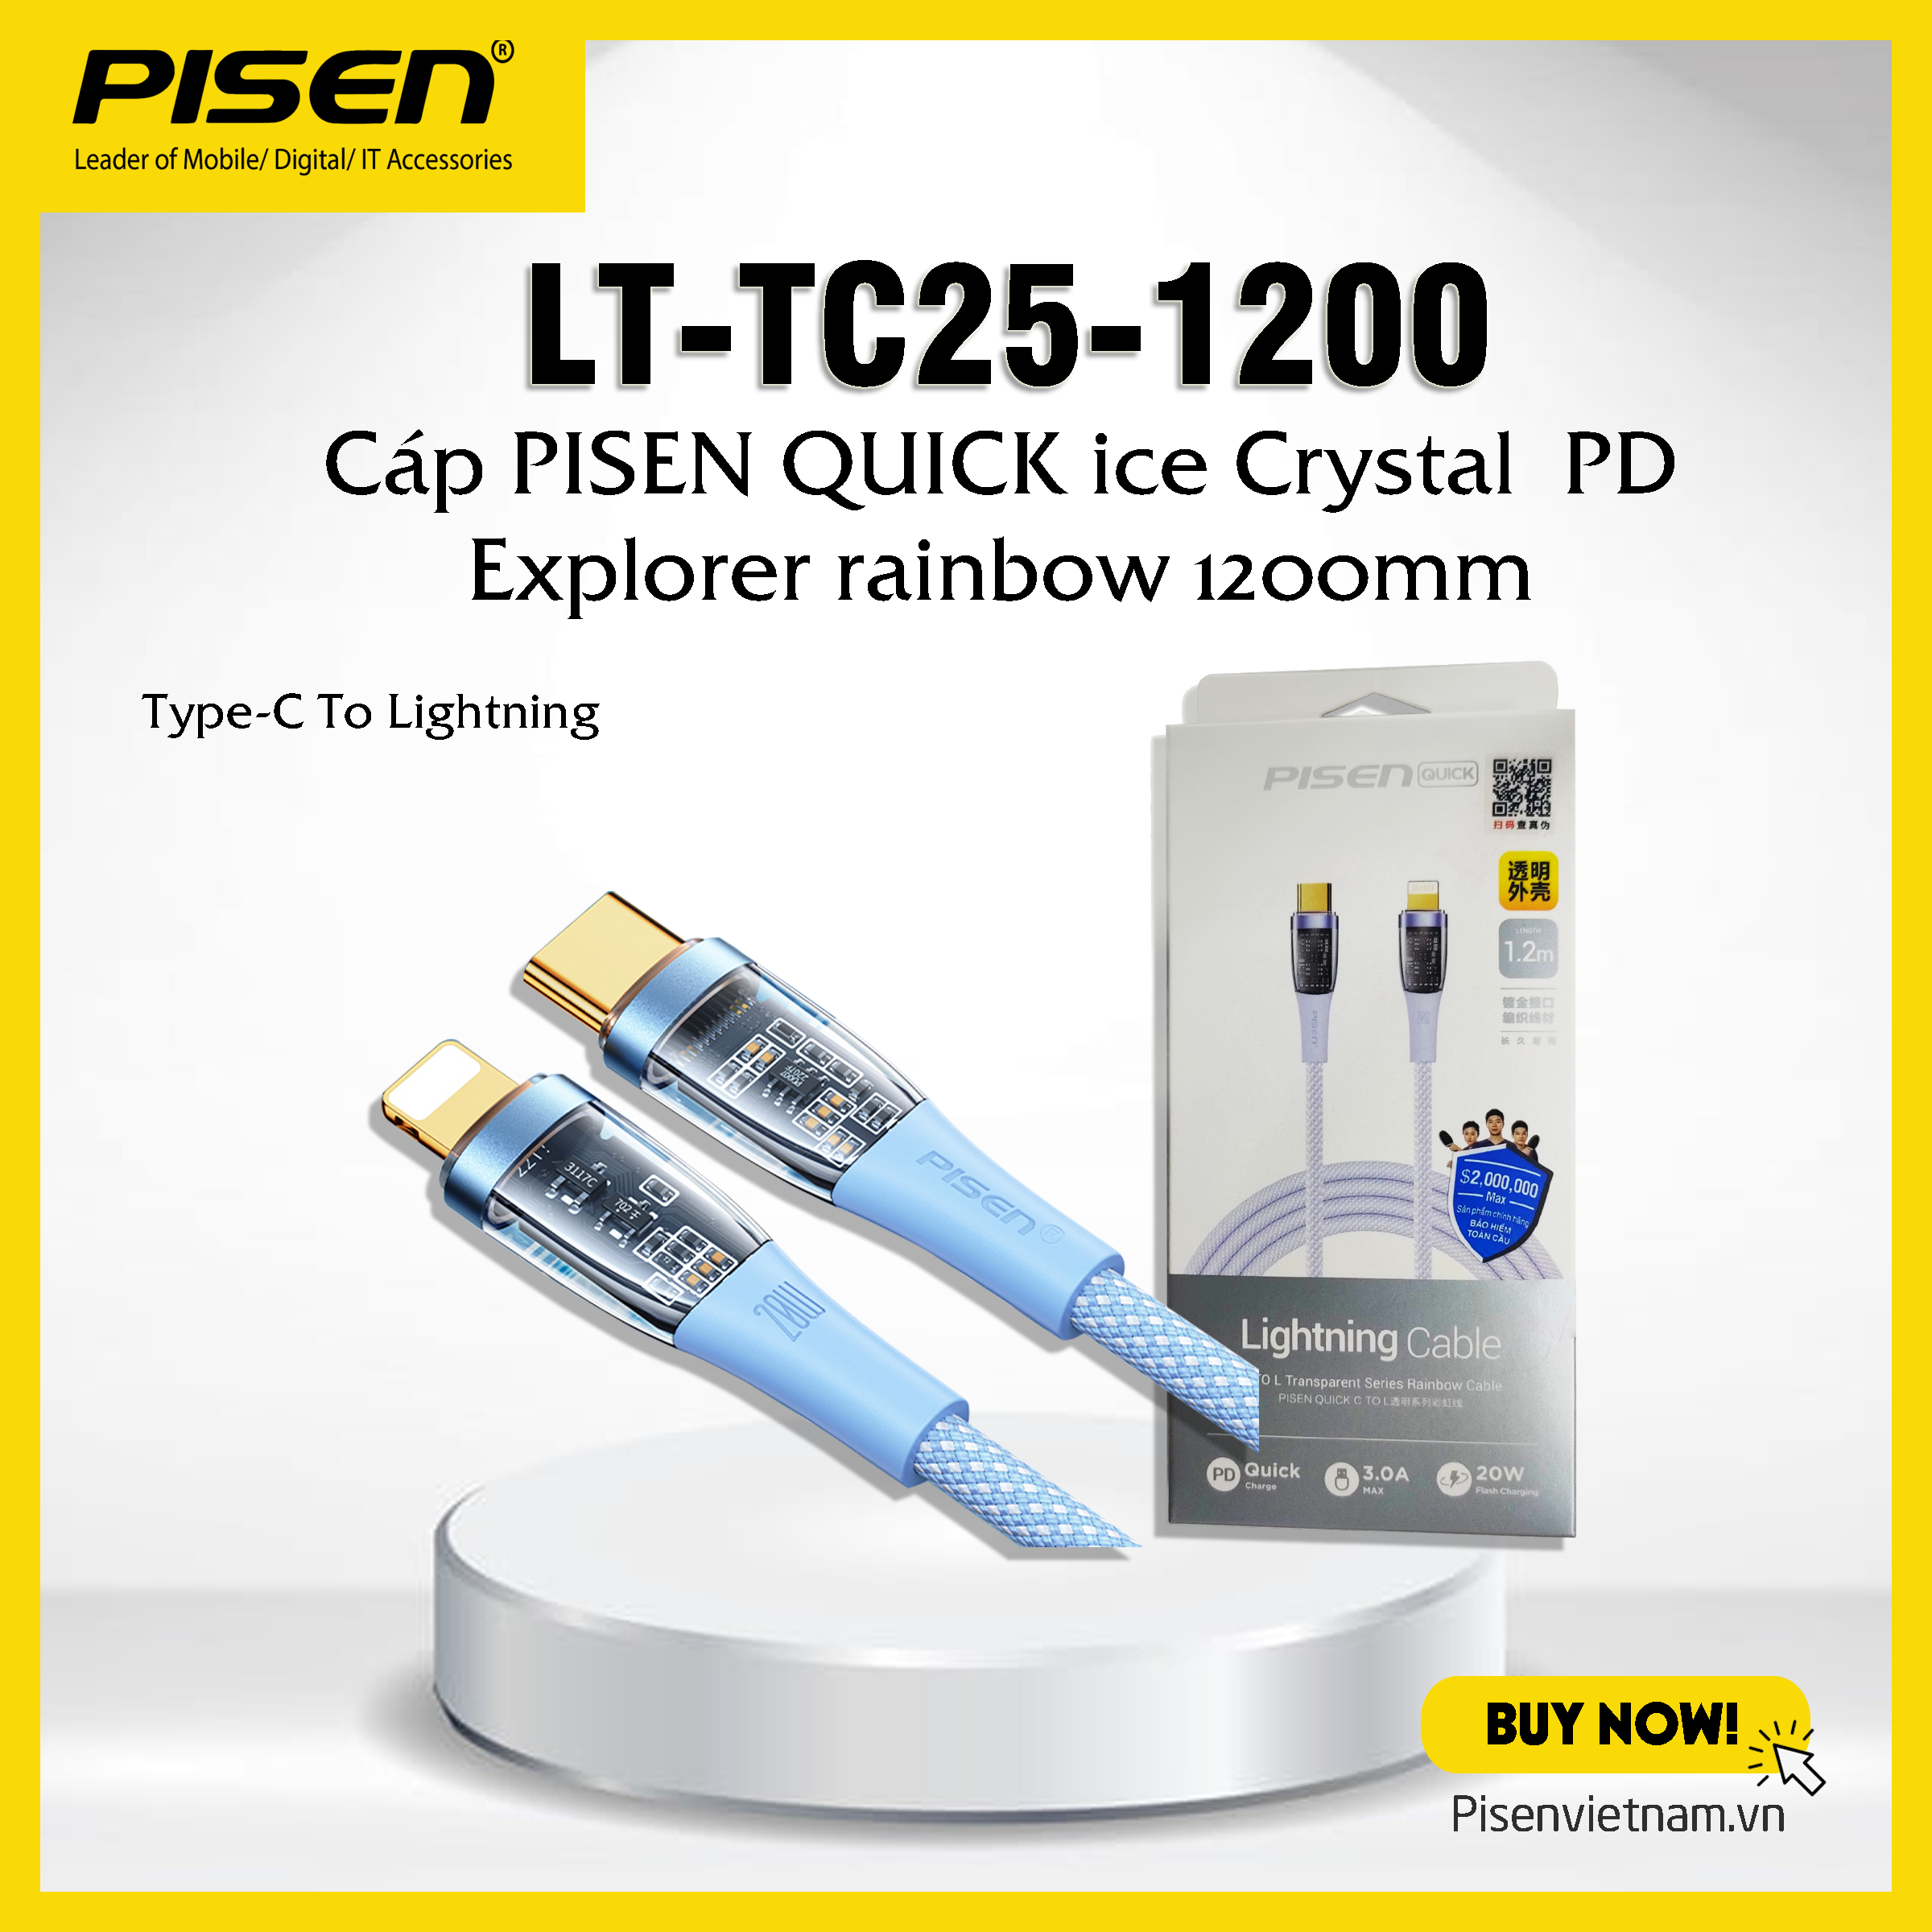 Cáp cao cấp Pisen Quick Ice Cry stal PD Explorer Rainbow 1200mm, Type-C sạc nhanh 20W (LT-TC25) - Hàng chính hãng